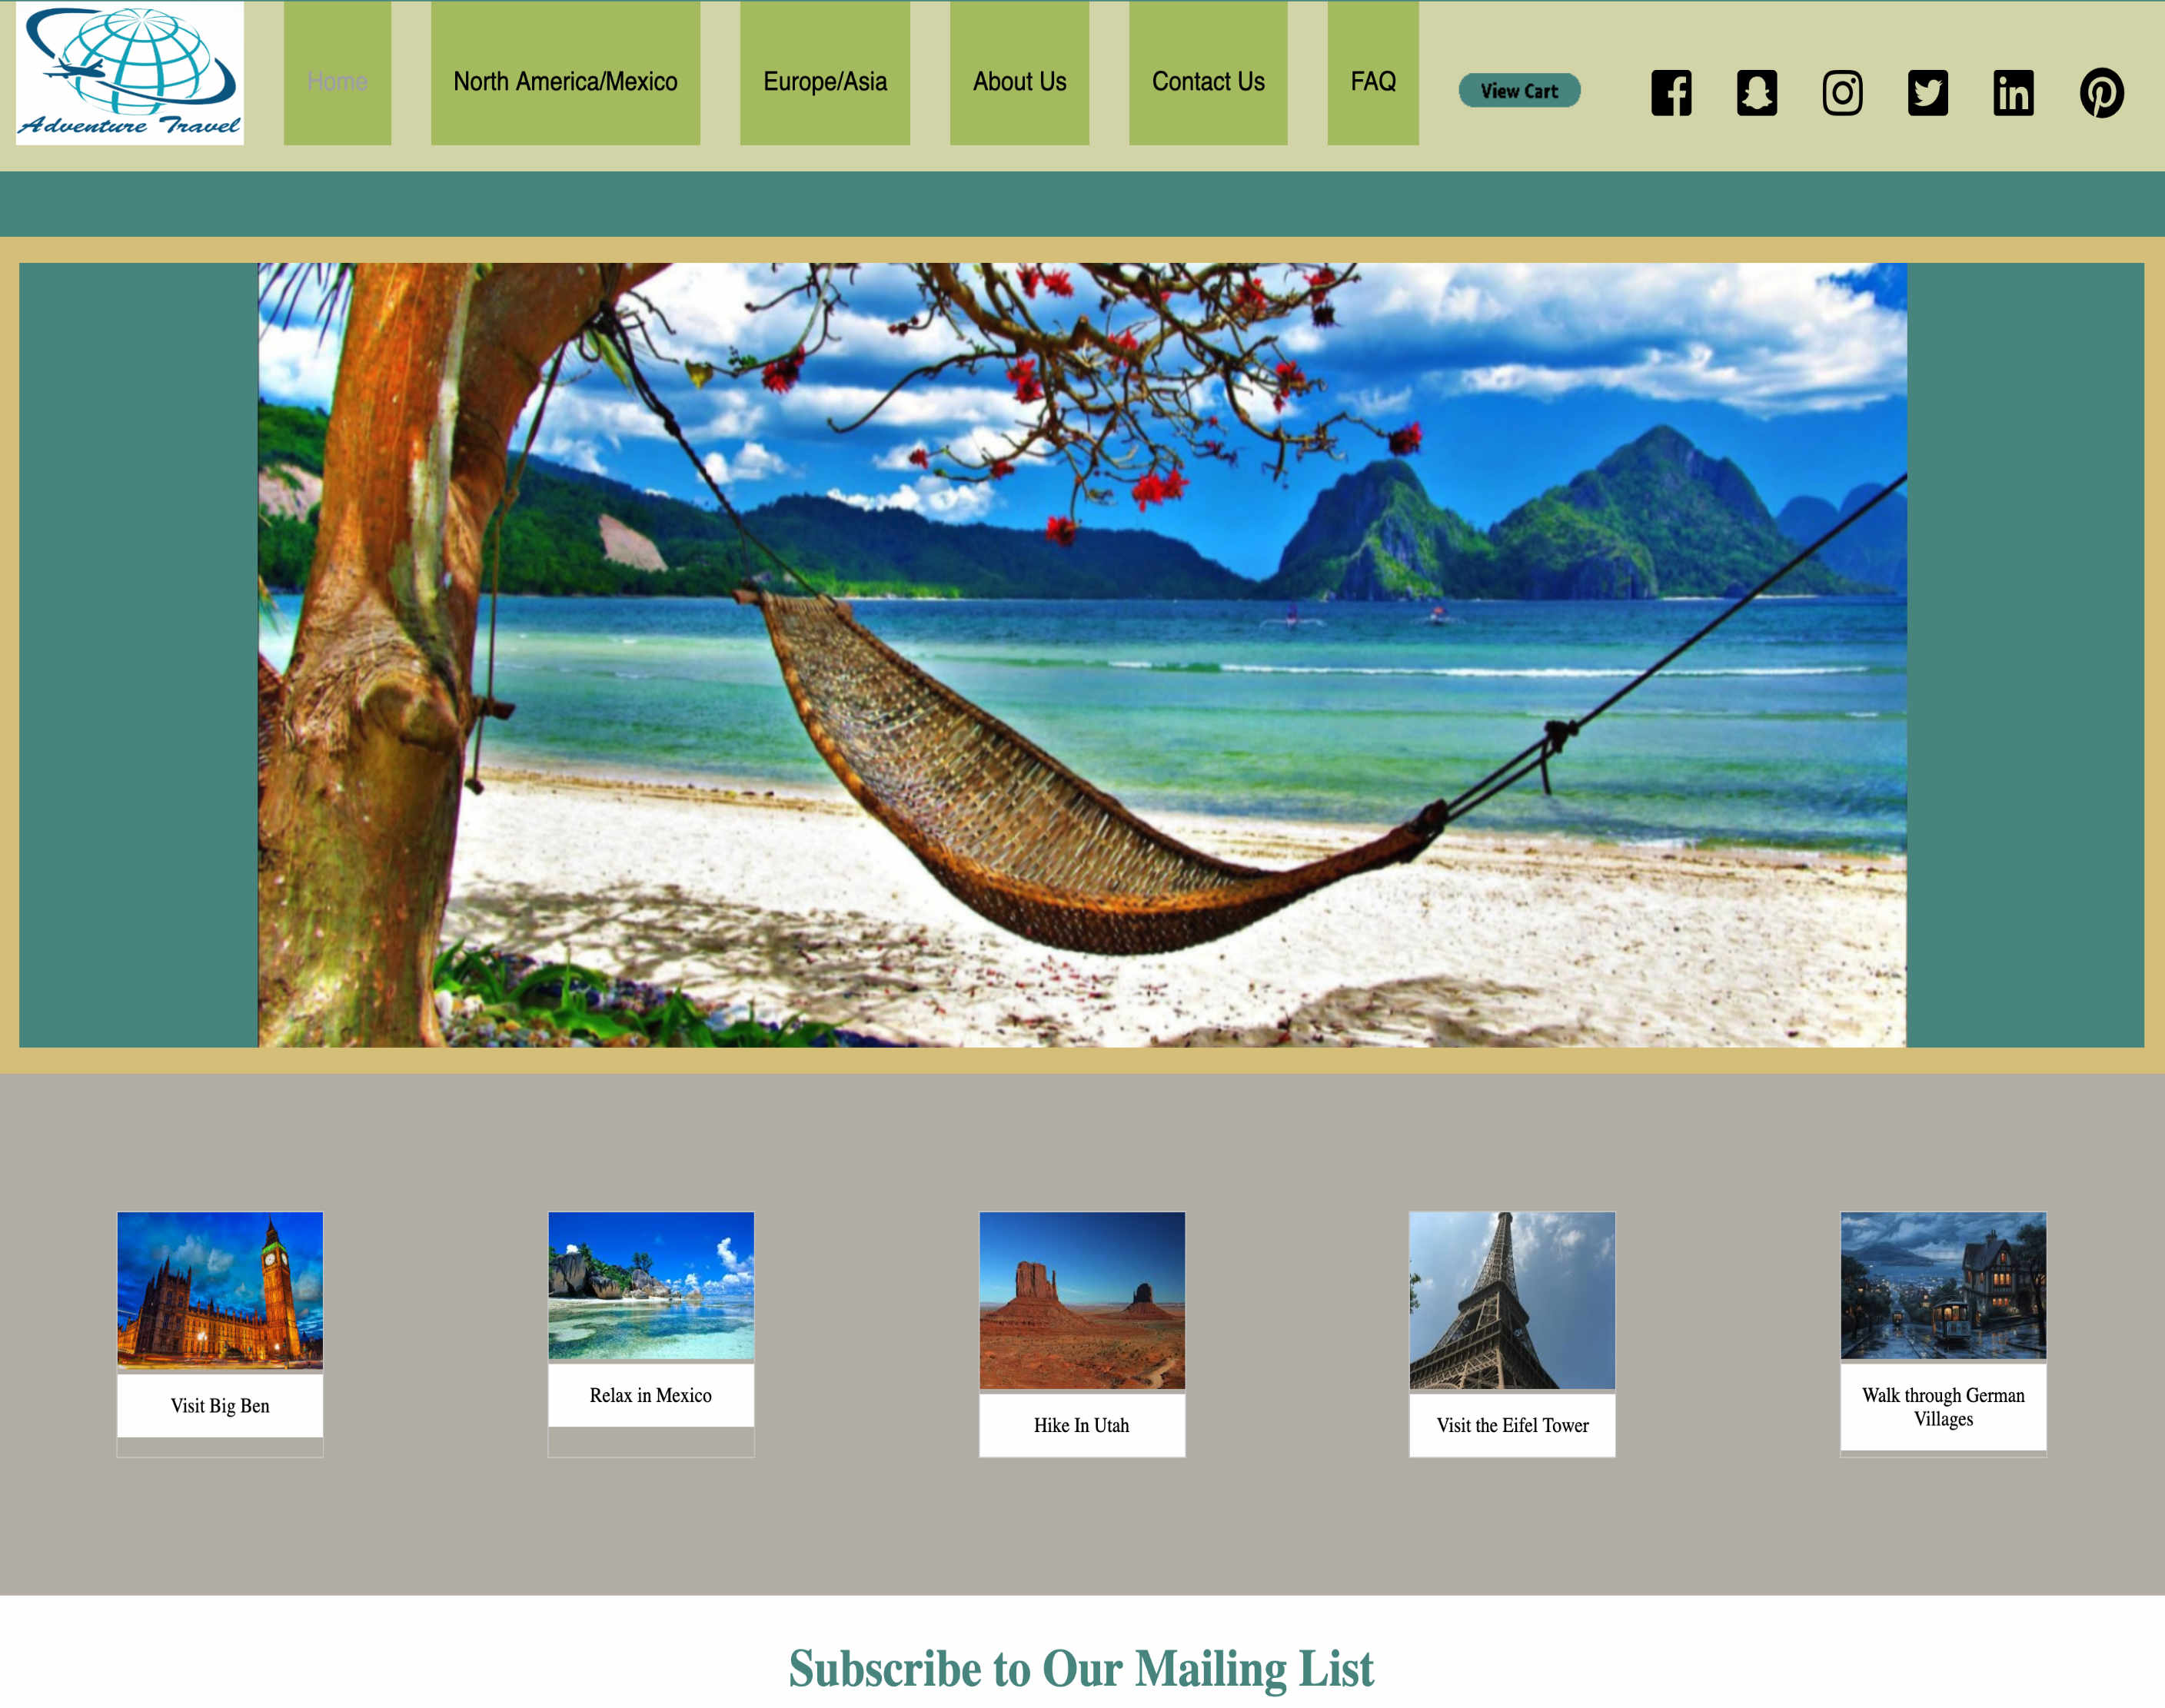 Image of Andrew Schnaare Adventure Travel e-commerce website.